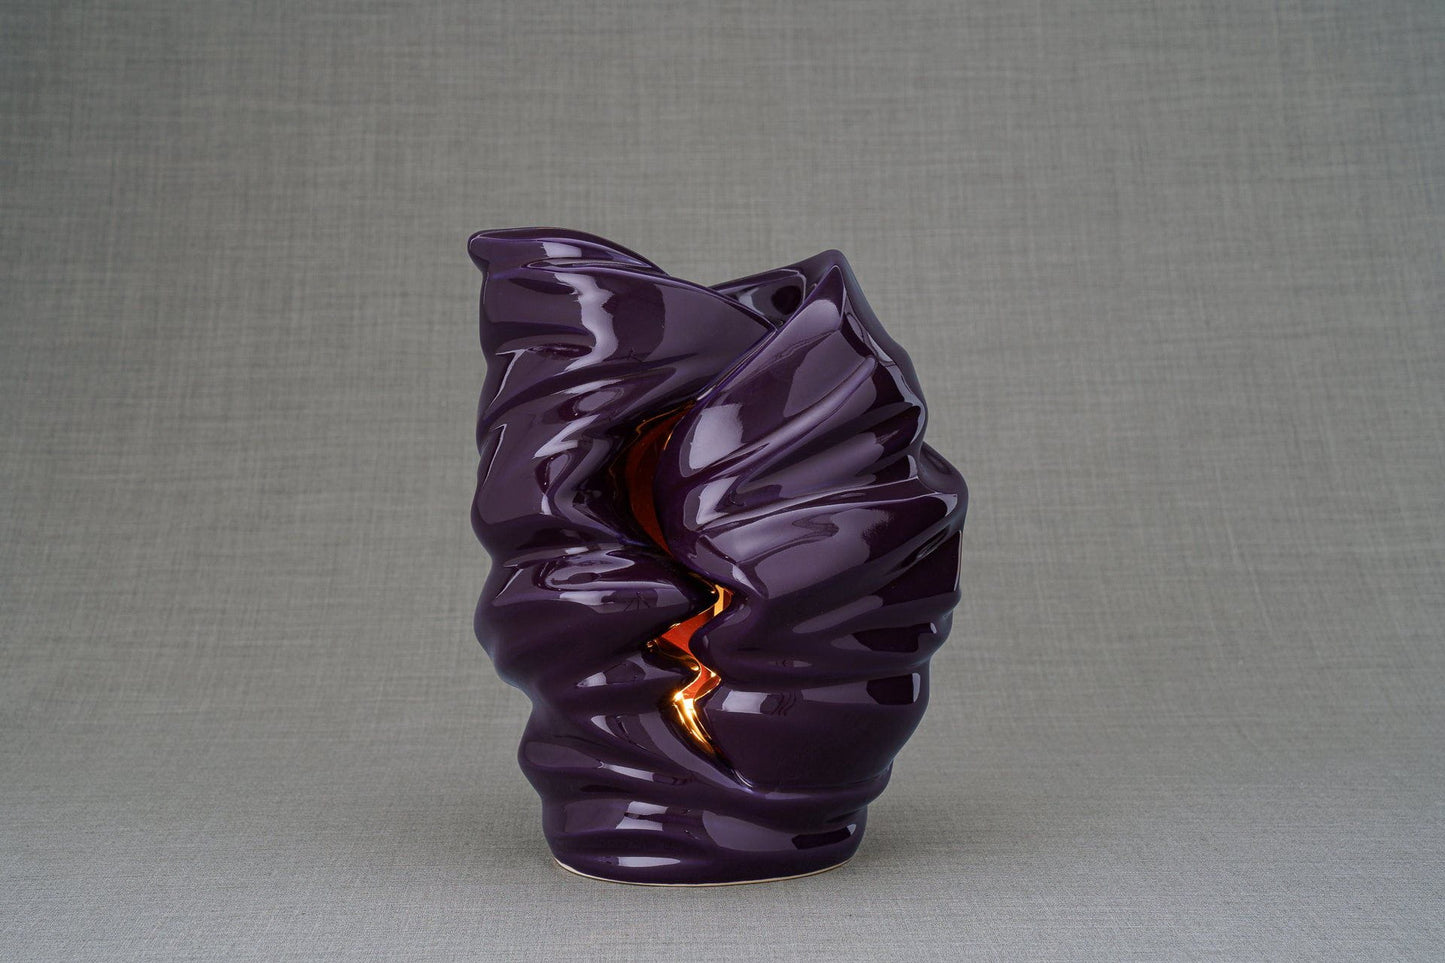 Pulvis Art Urns Adult Size Urn Handmade Cremation Urn for Ashes "Light" - Large | Violet | Ceramic